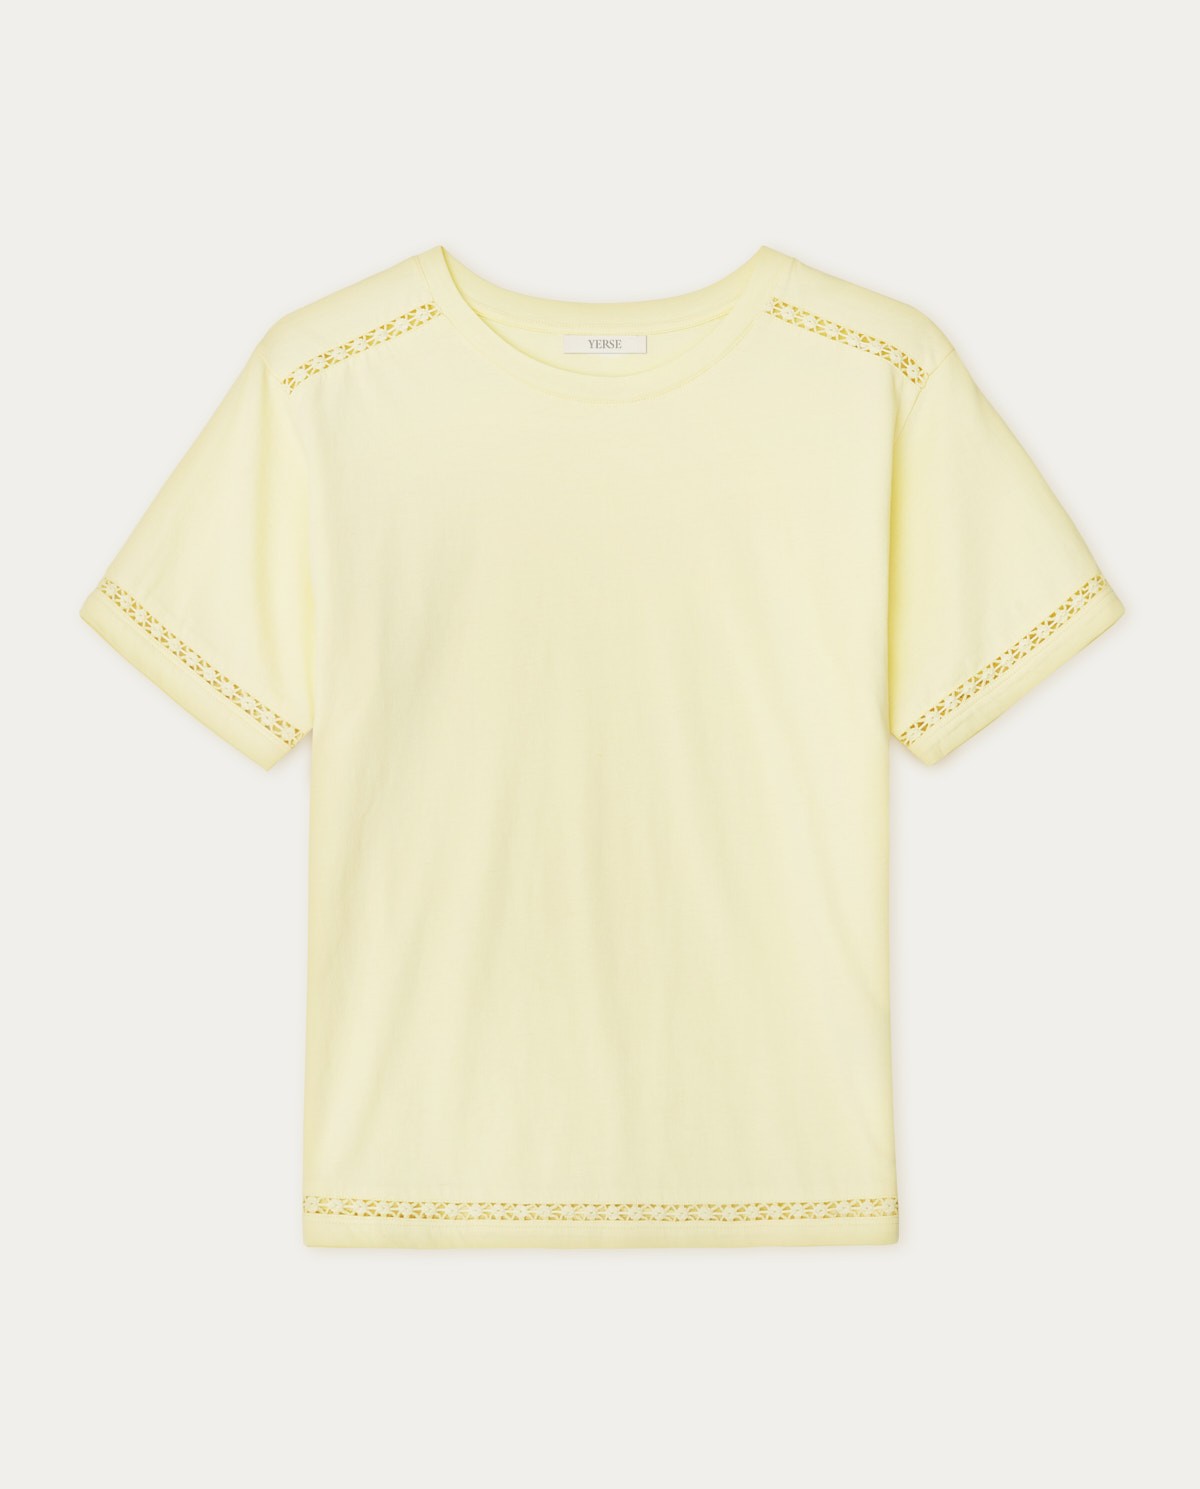 Cotton t-shirt decorative stitching Yellow 1